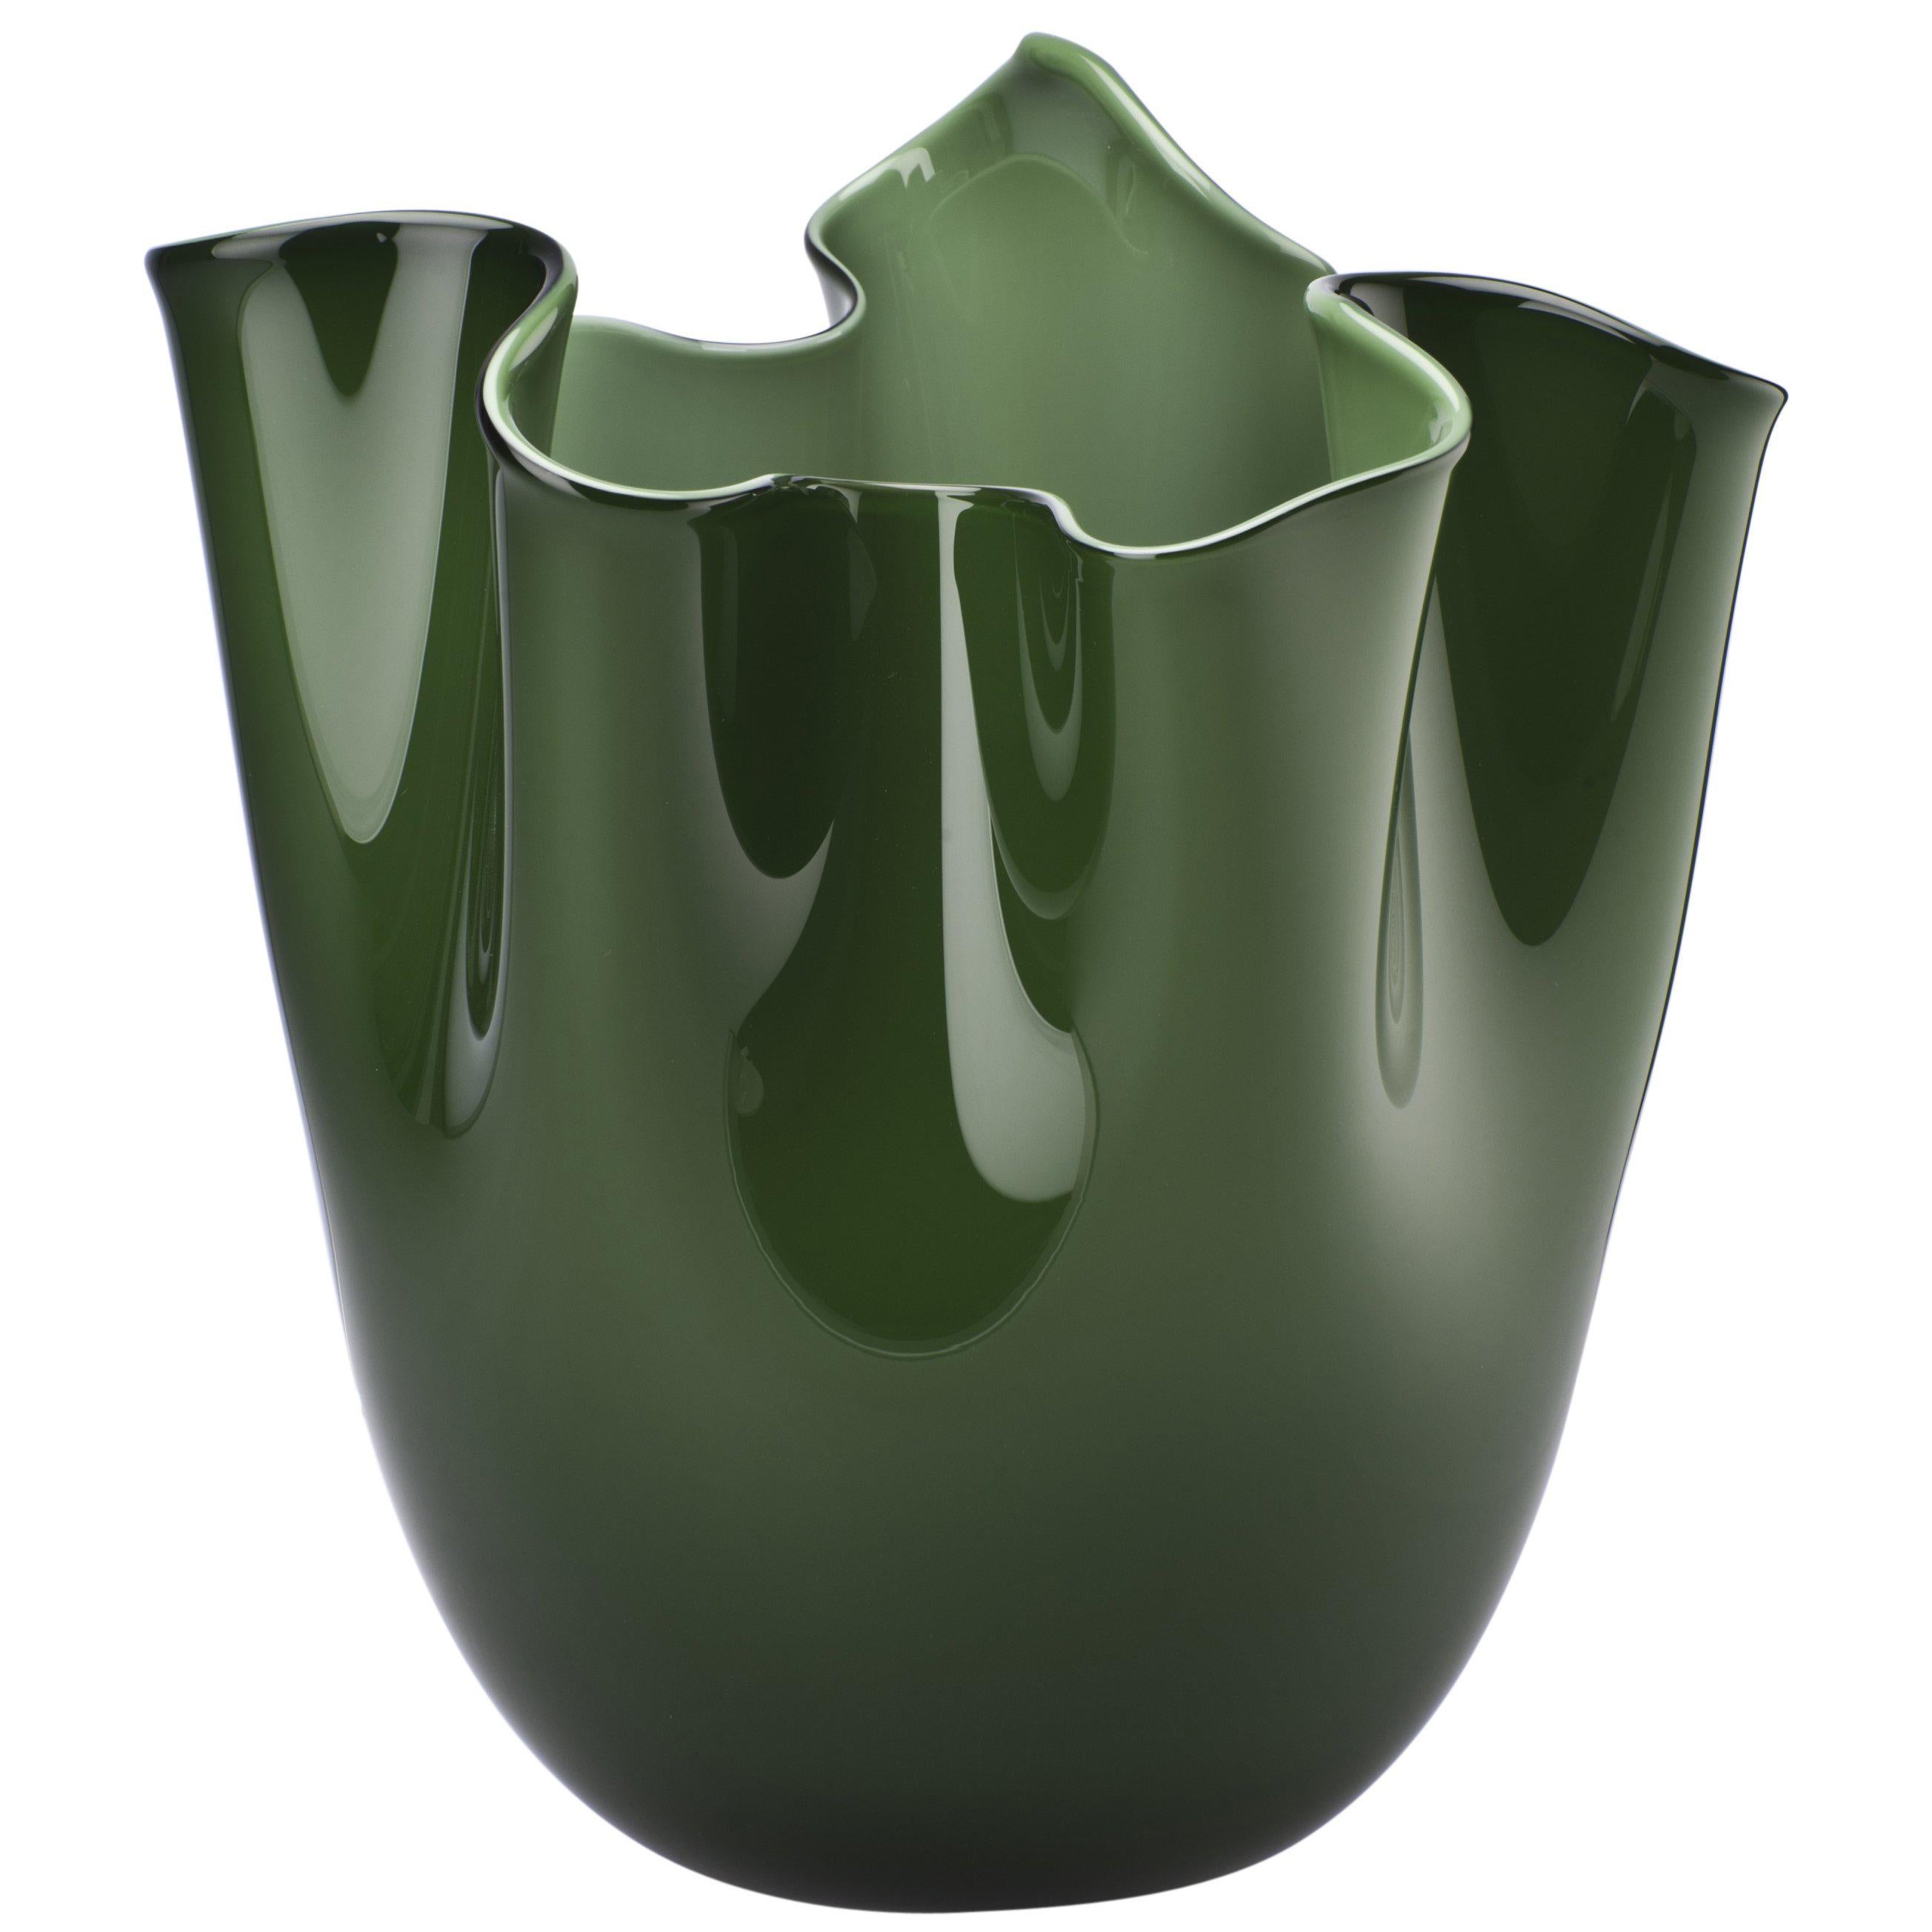 Fazzoletto Glass Vase in Apple Green by Fulvio Bianconi & Paolo Venini For Sale